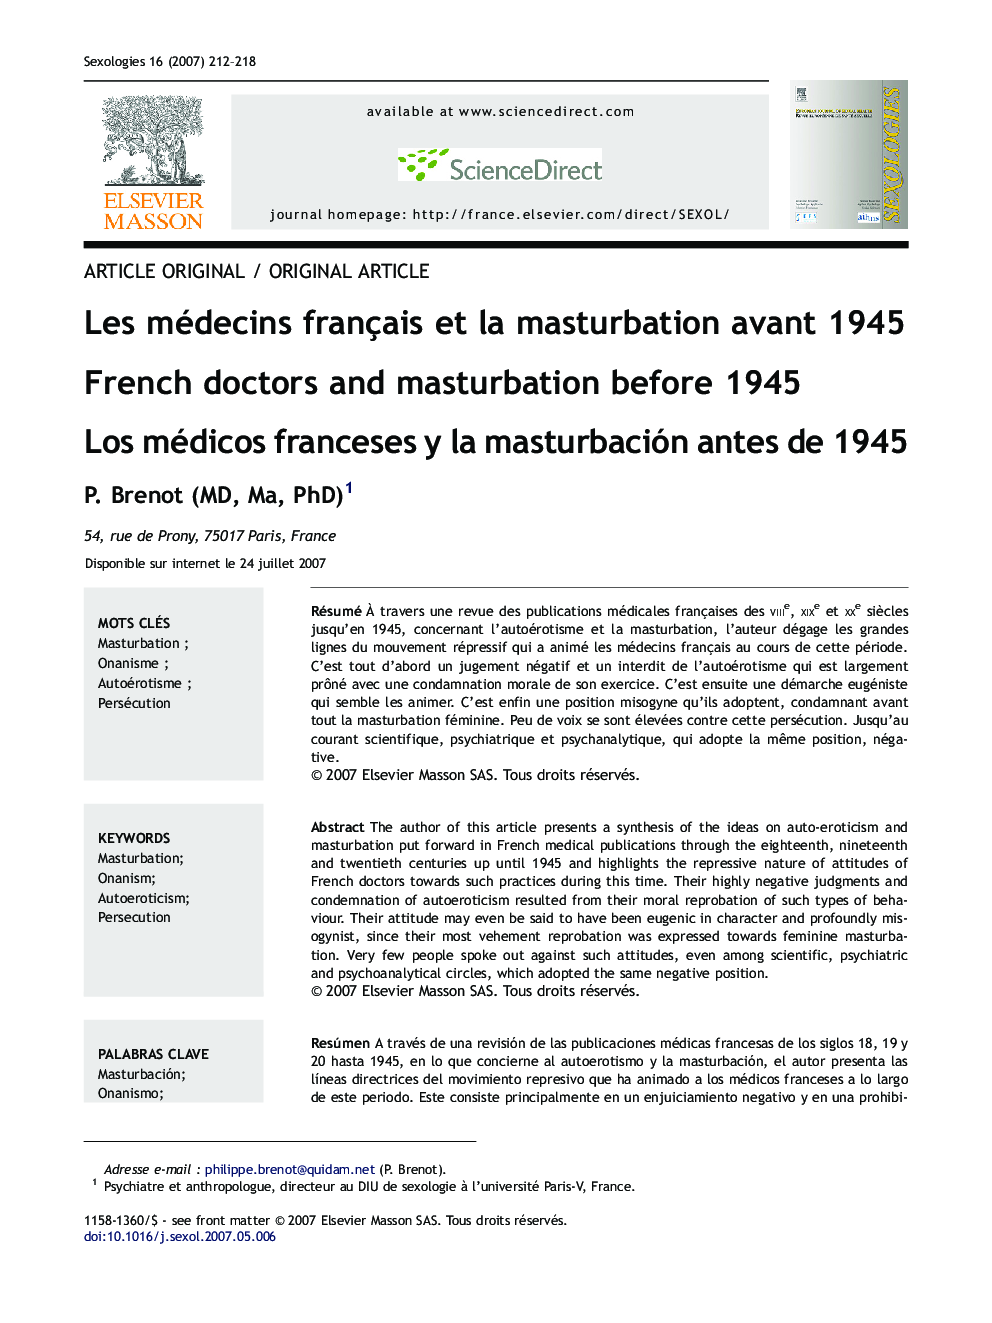 Les médecins français et la masturbation avant 1945